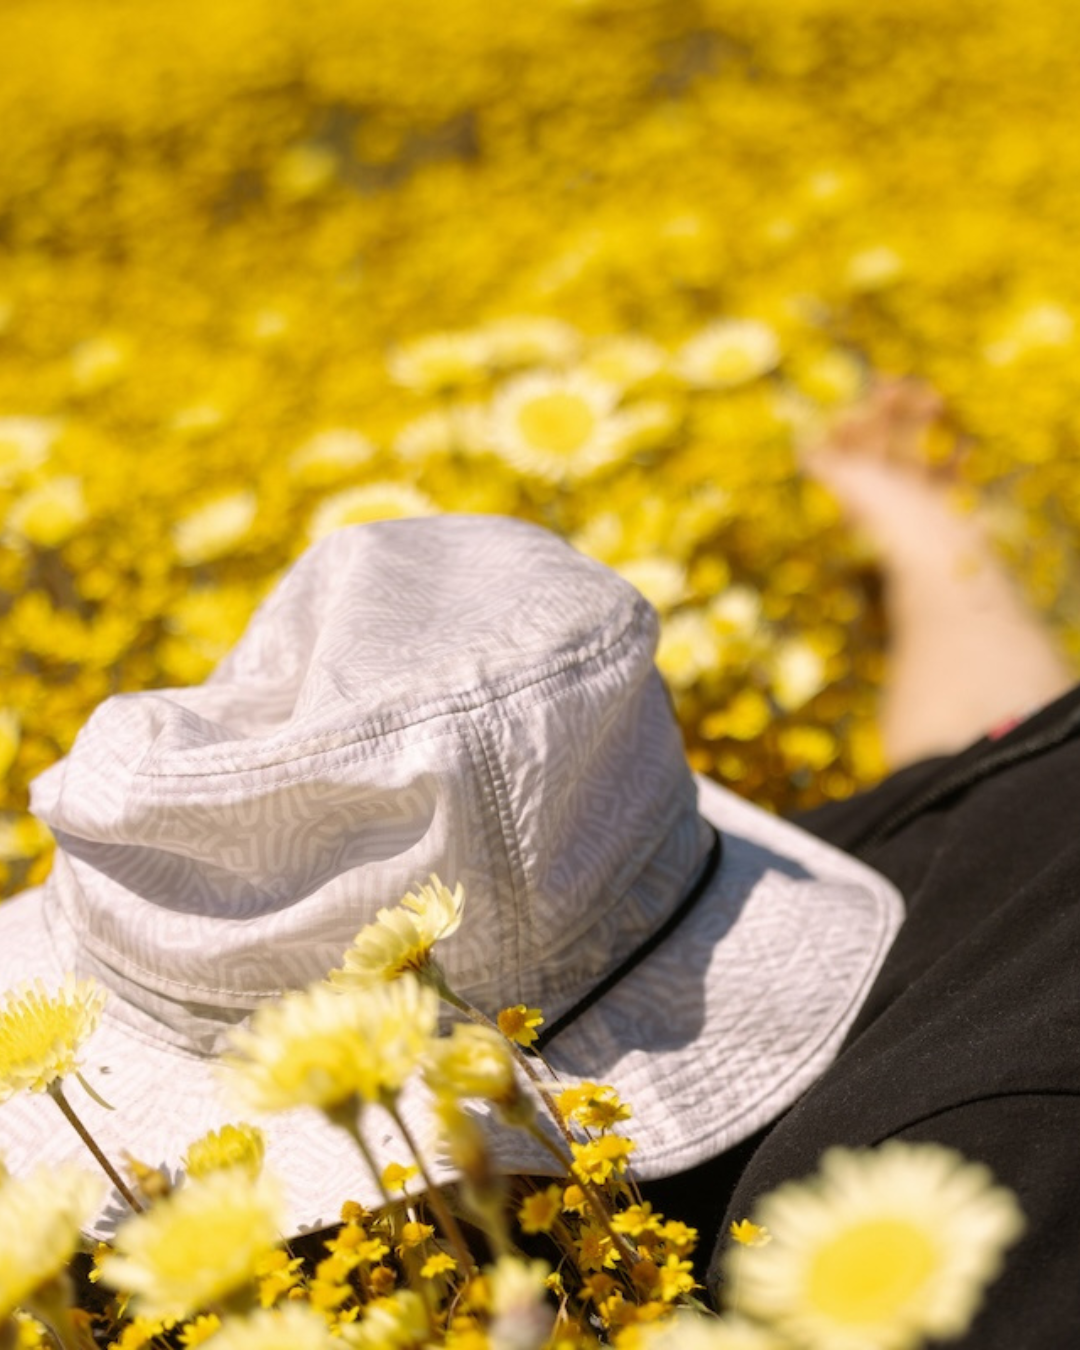 Coal Traverse Bucket Hat in a field of yellow flowers